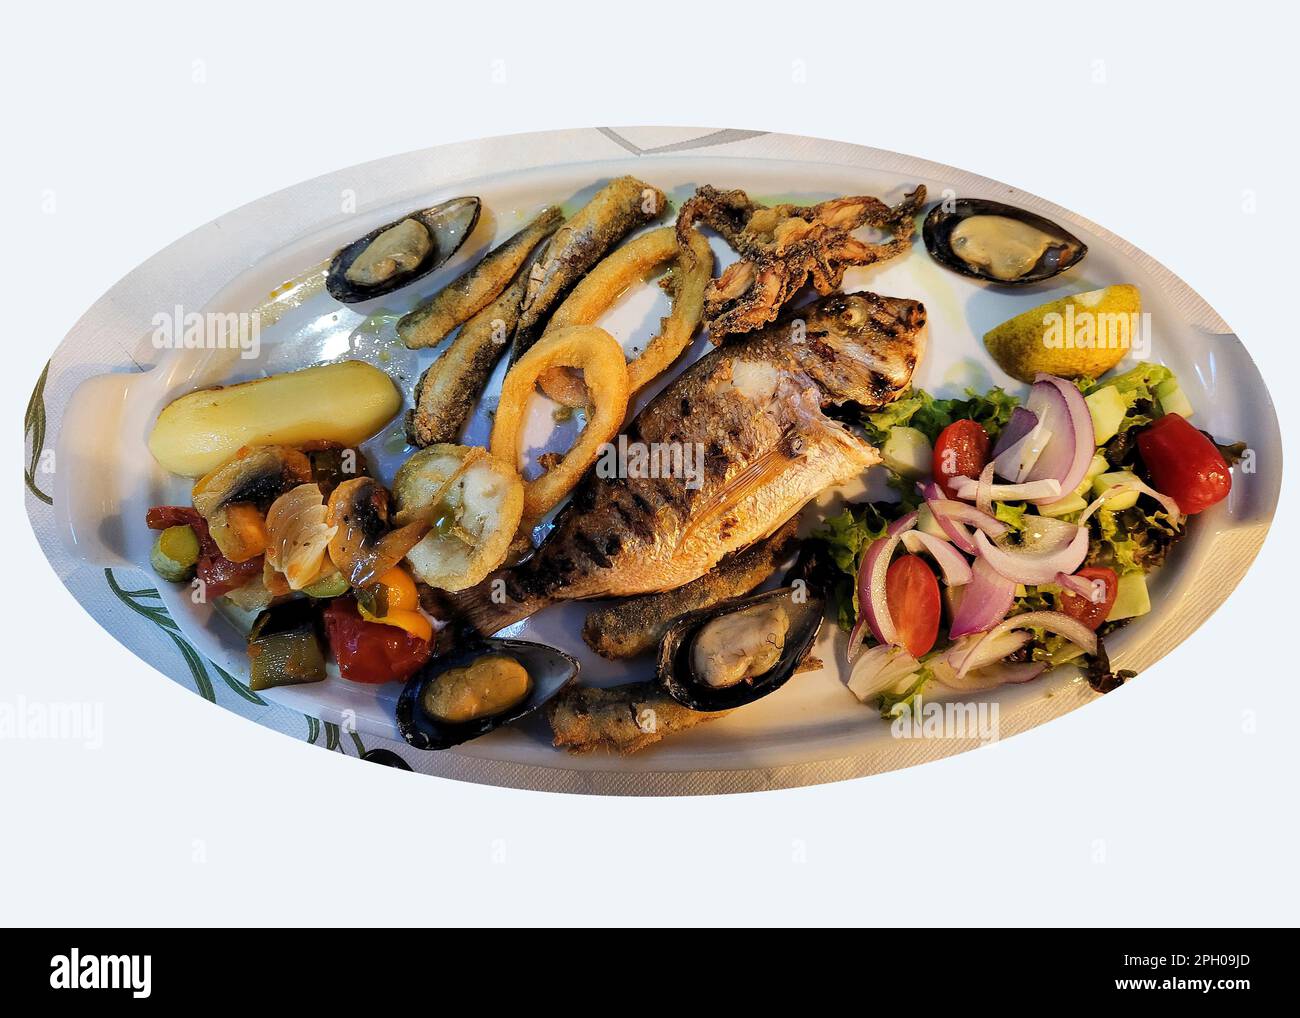 Grecia, cucina mediterranea, piatto con vari frutti di mare come pesce, orata, sardine, calamari, cozze e verdure Foto Stock